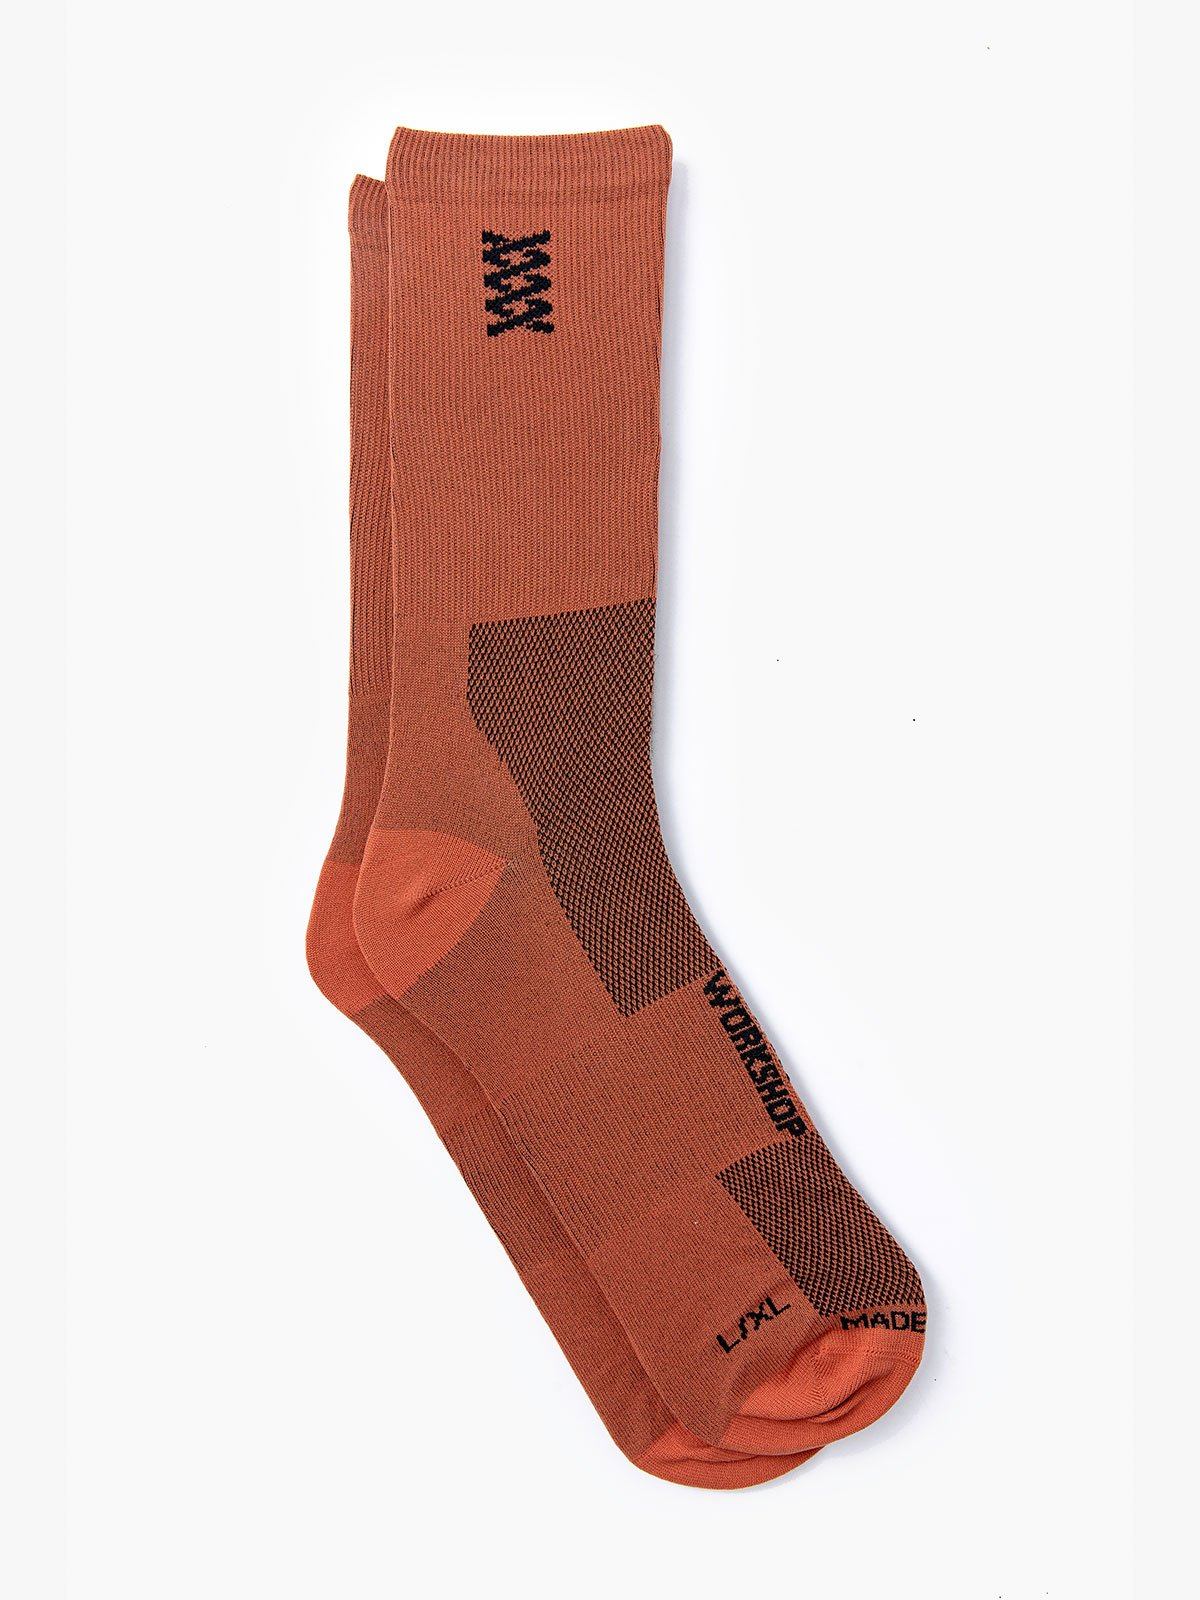 Mission Pro Socks by Mission Workshop - Säänkestävät laukut ja tekniset vaatteet - San Francisco & Los Angeles - Kestävät - ikuinen takuu